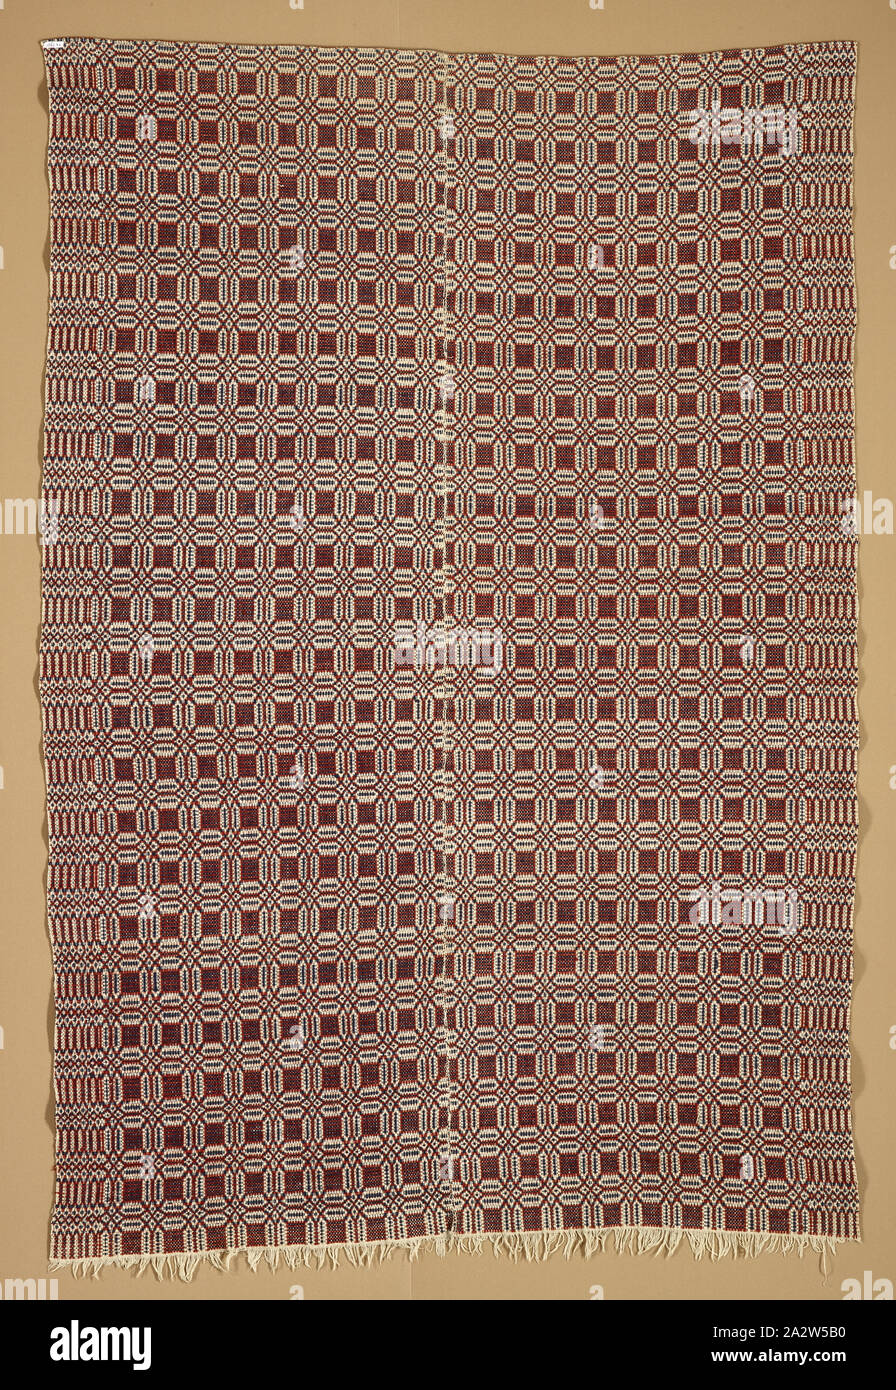 Couvre-lit couvre-lit (dépassé), Inconnu, 1800-1850, le coton et la laine, 95 x 63 in. (Sans marge) 97 x 63 in. (Avec fringe), cuisine américaine, du textile et de l'Arts de la mode Banque D'Images